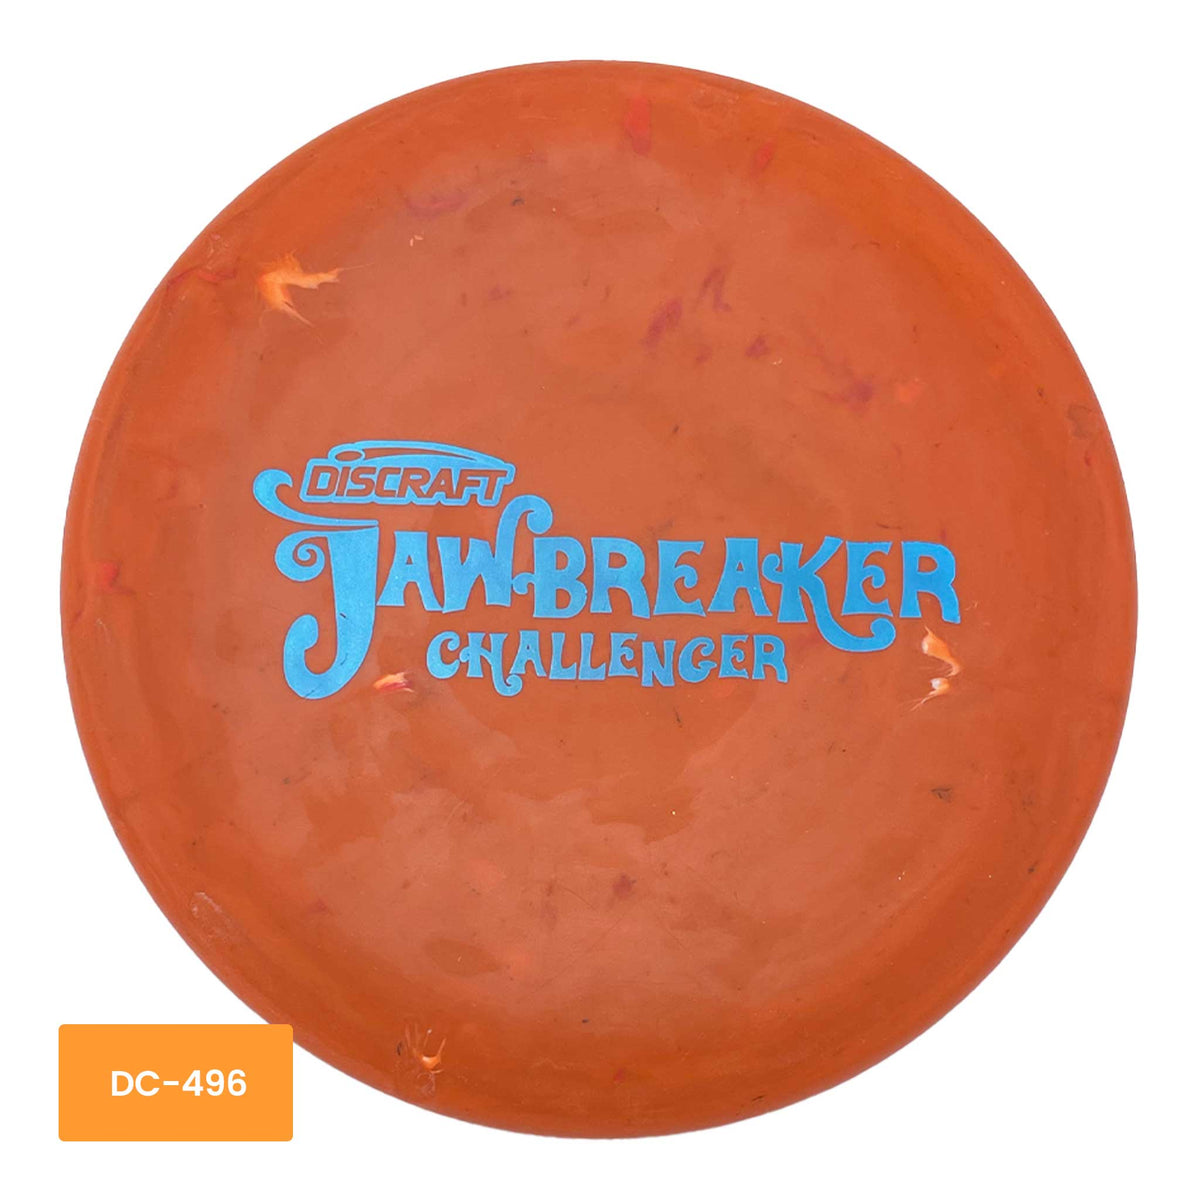 Discraft Jawbreaker Challenger putter - Orange